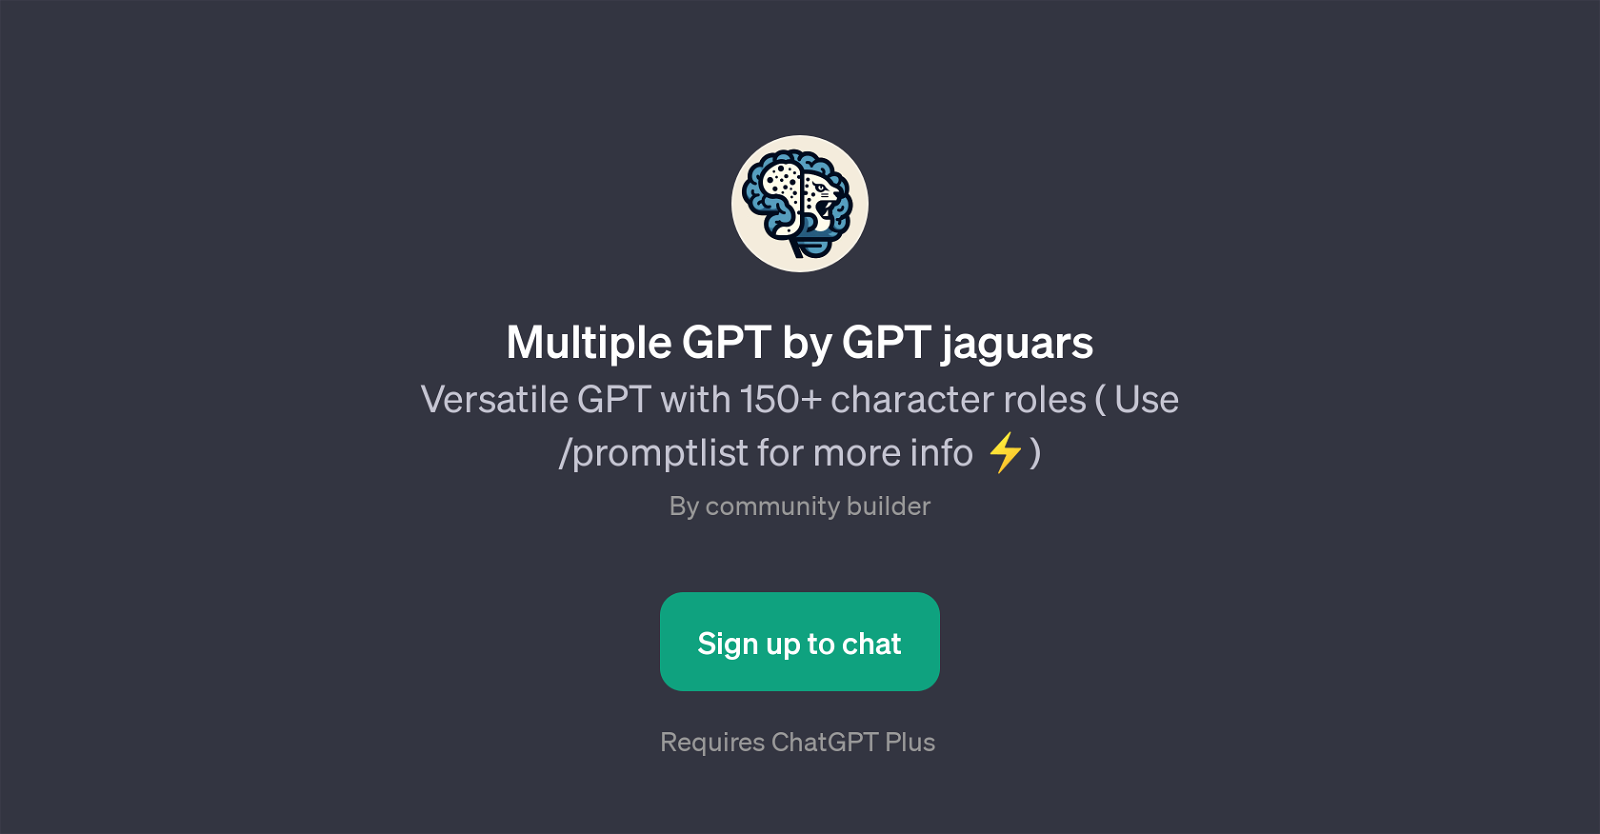 Multiple GPT by GPT Jaguars website